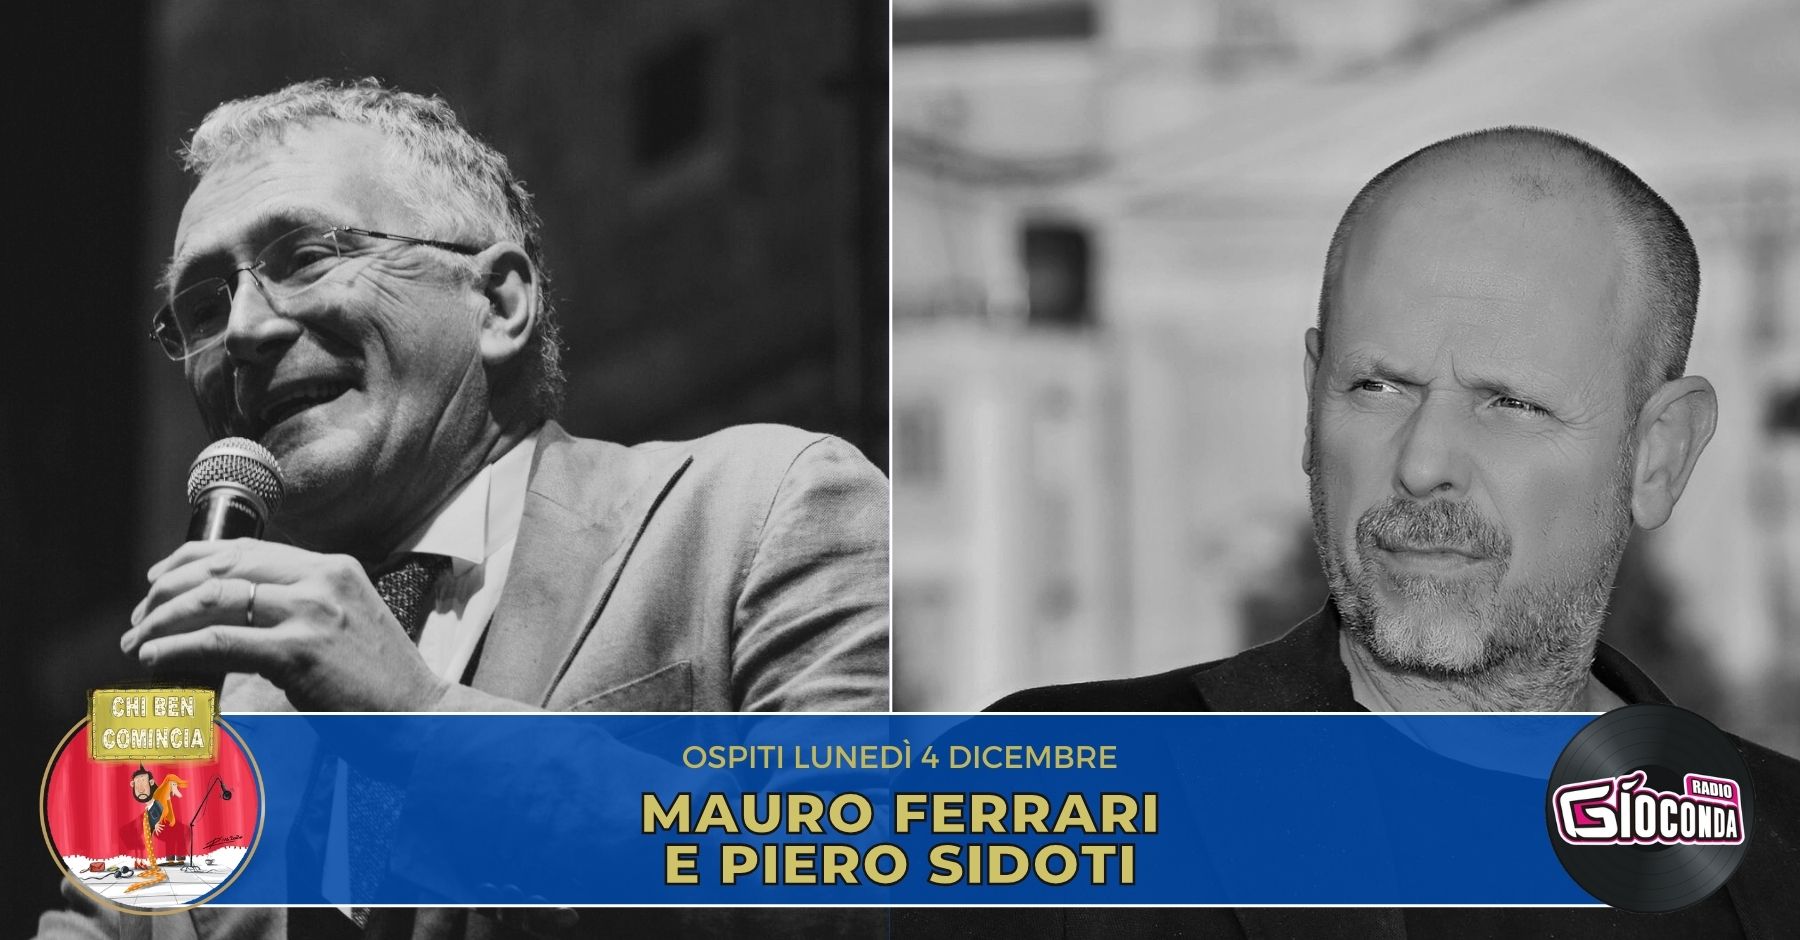 Lo scienziato Mauro Ferrari e il cantautore Piero Sidoti sono gli ospiti della nuova puntata di “Chi ben comincia” in onda lunedì 4 dicembre alle 18.00.